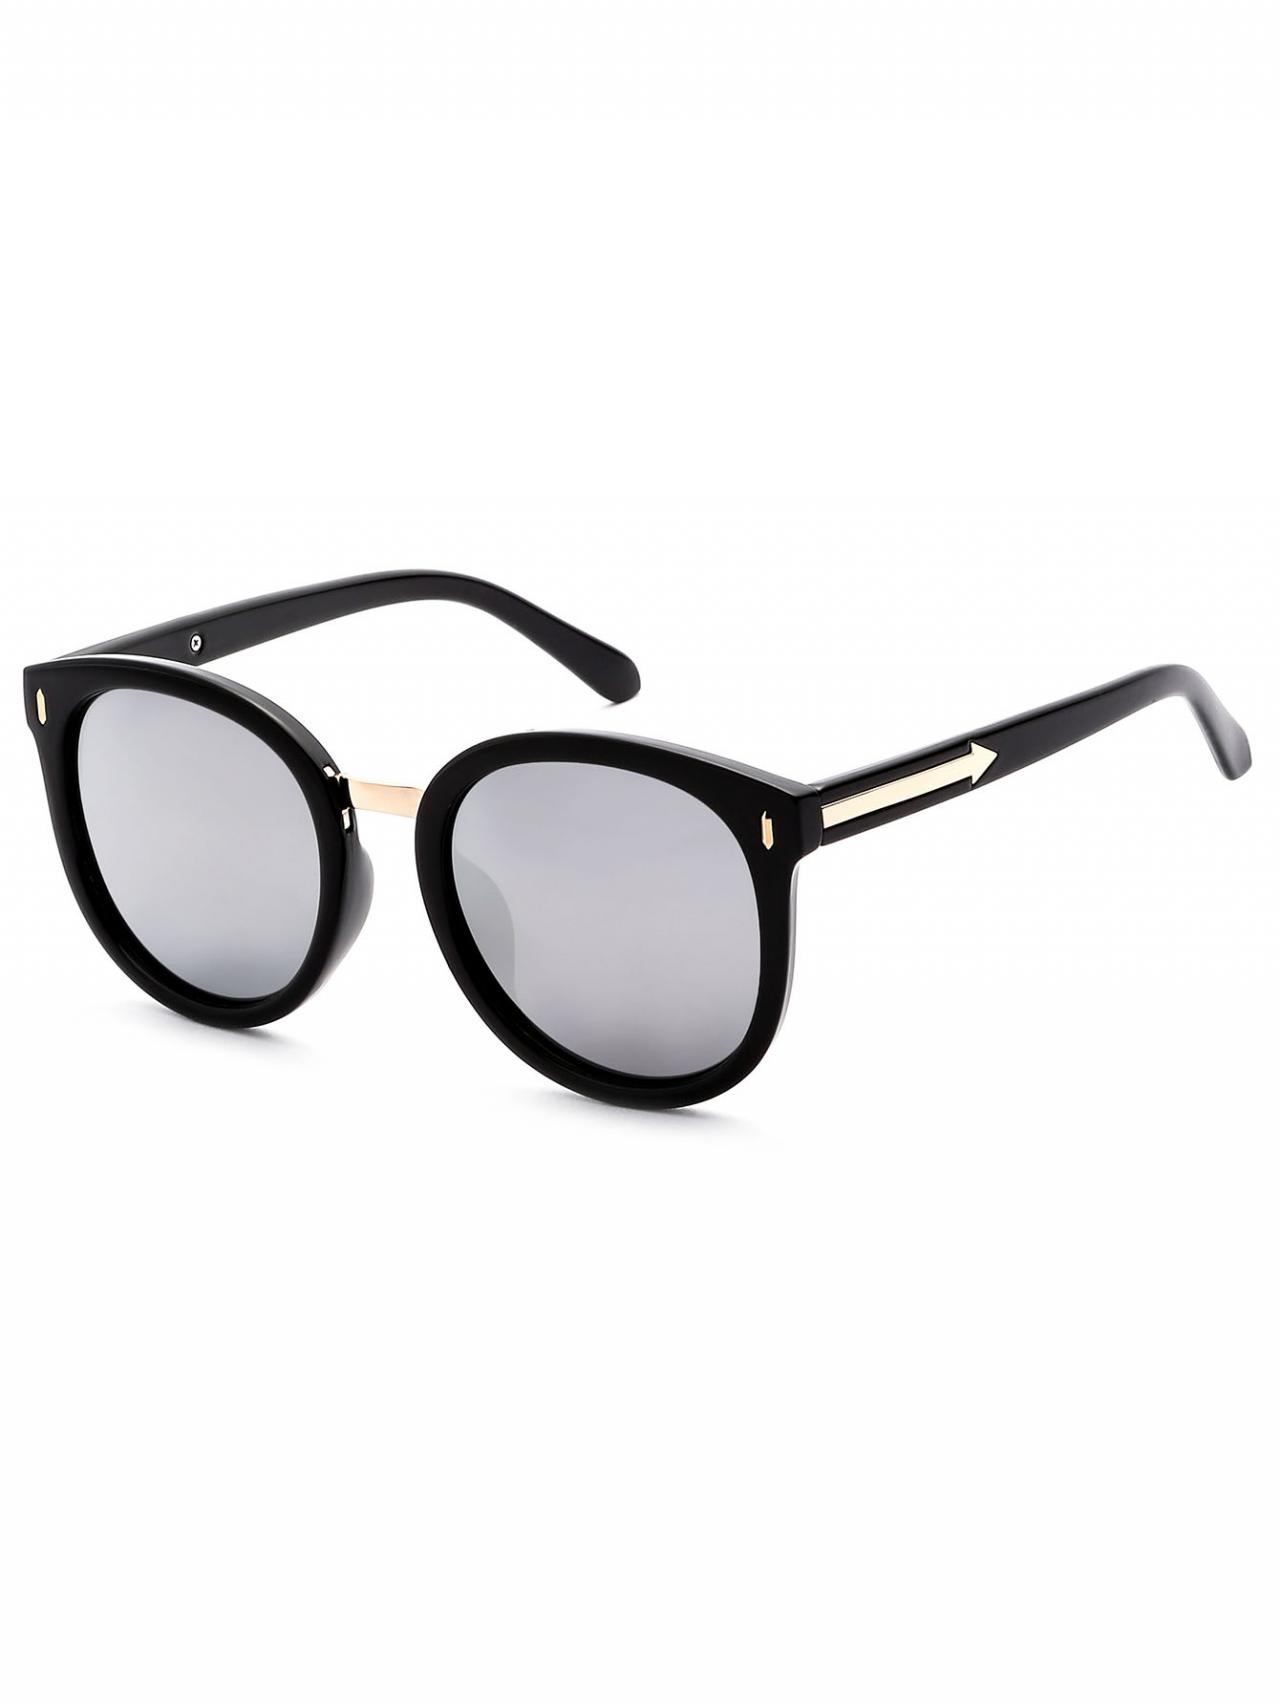 Black Frame Grey Lens Cat Eye Sunglasses